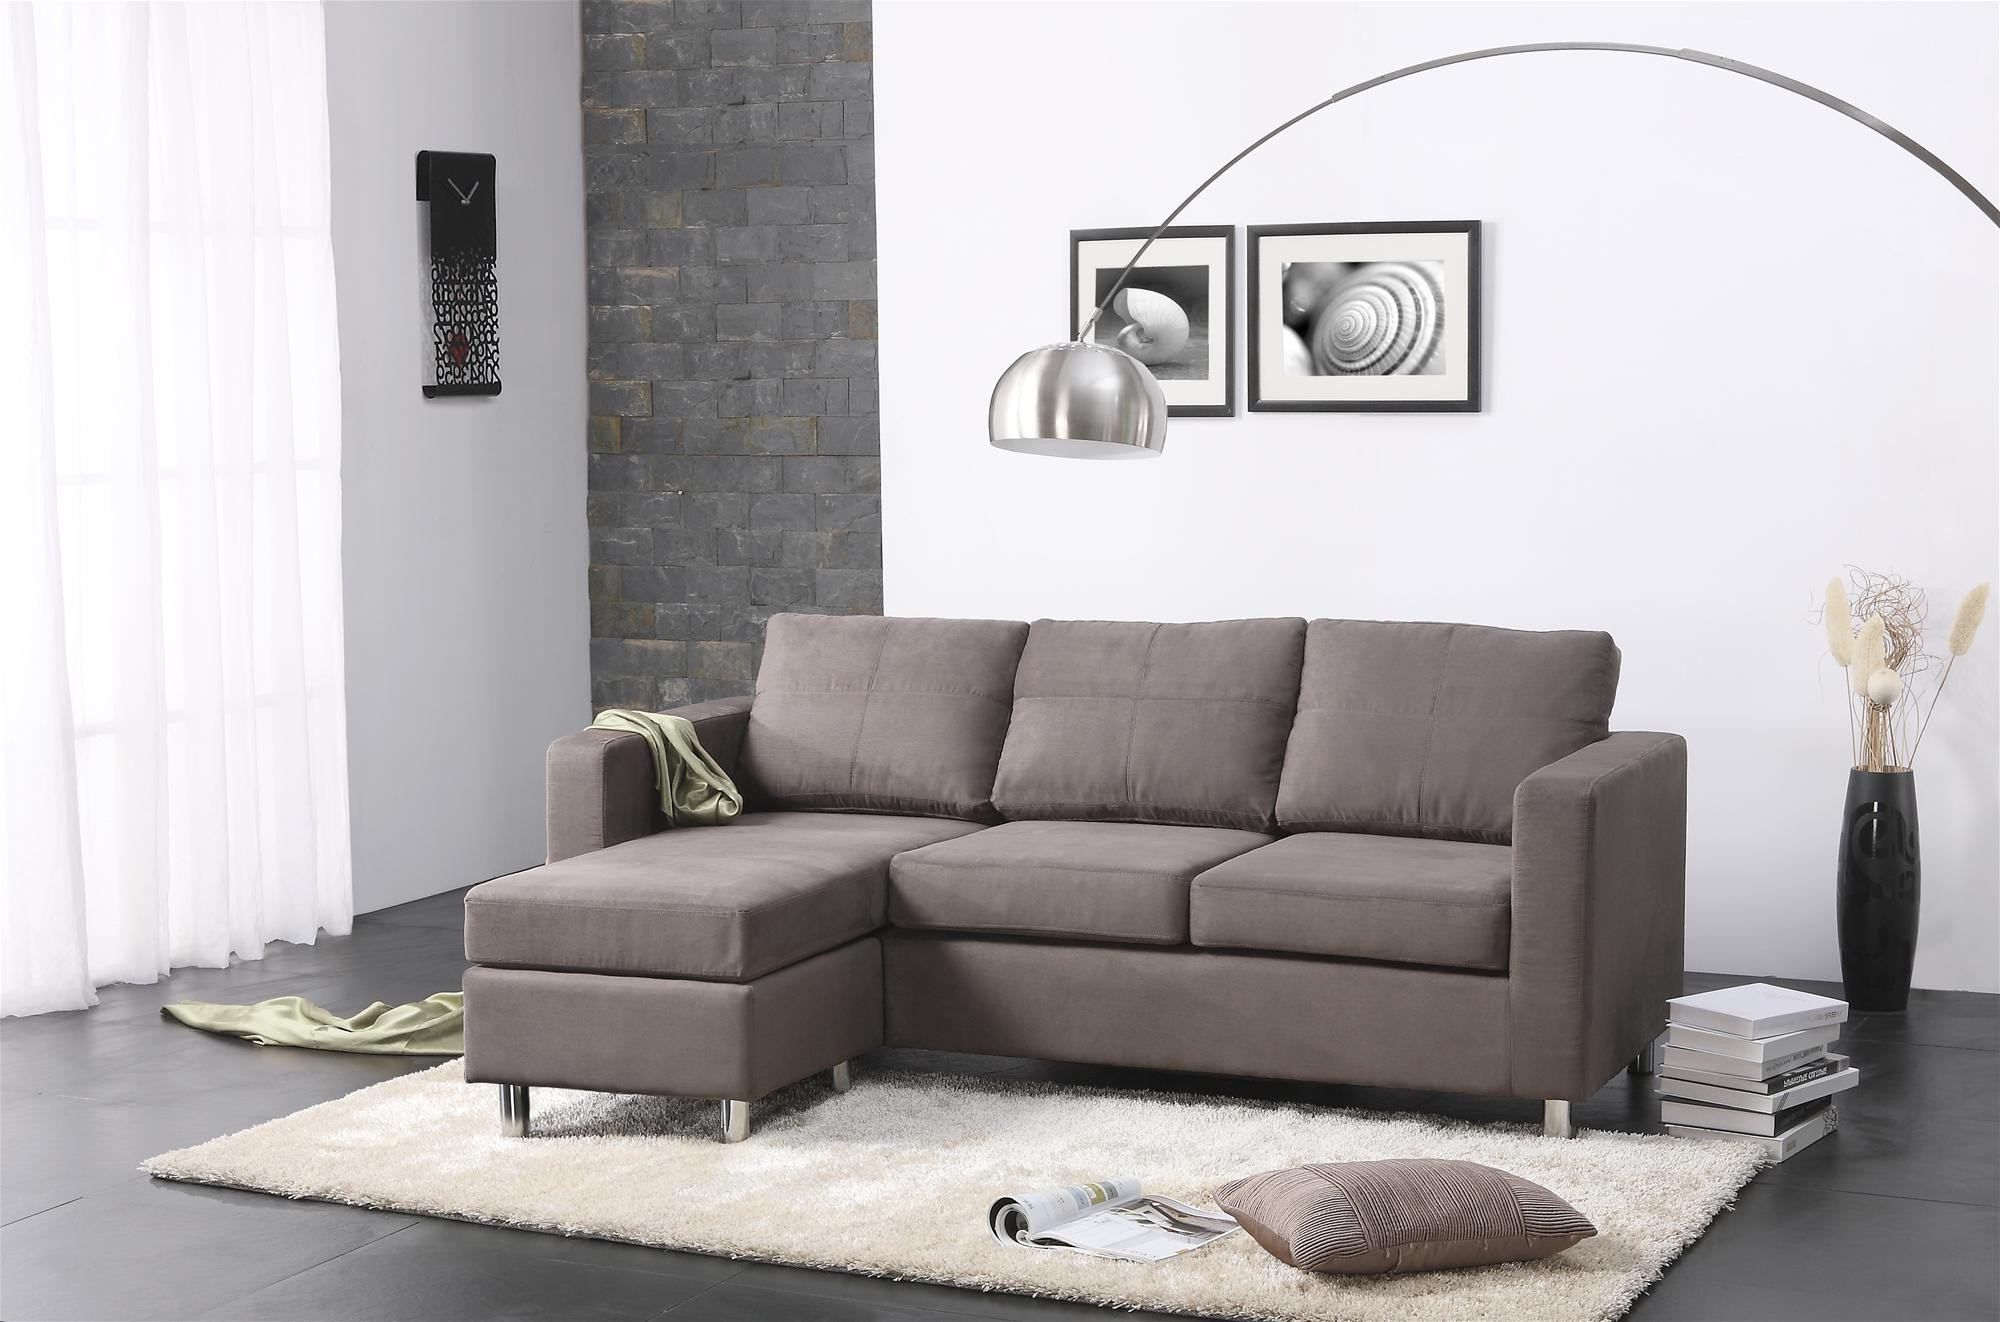 Sofa Set For A Small Living Room